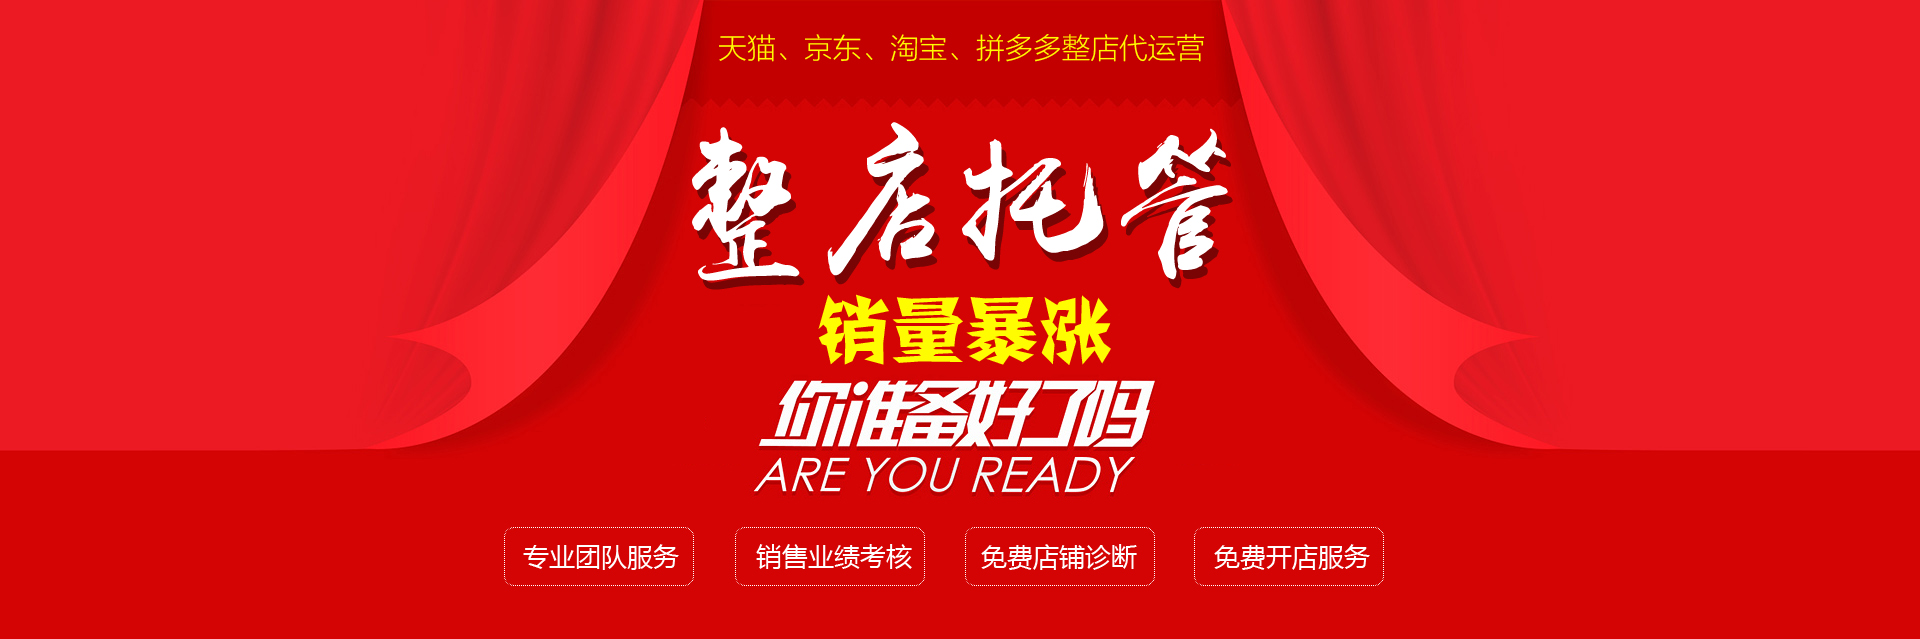 淘宝代运营1个月多少钱-广州思淘电商代运营怎么样-广州市思淘网络科技有限公司